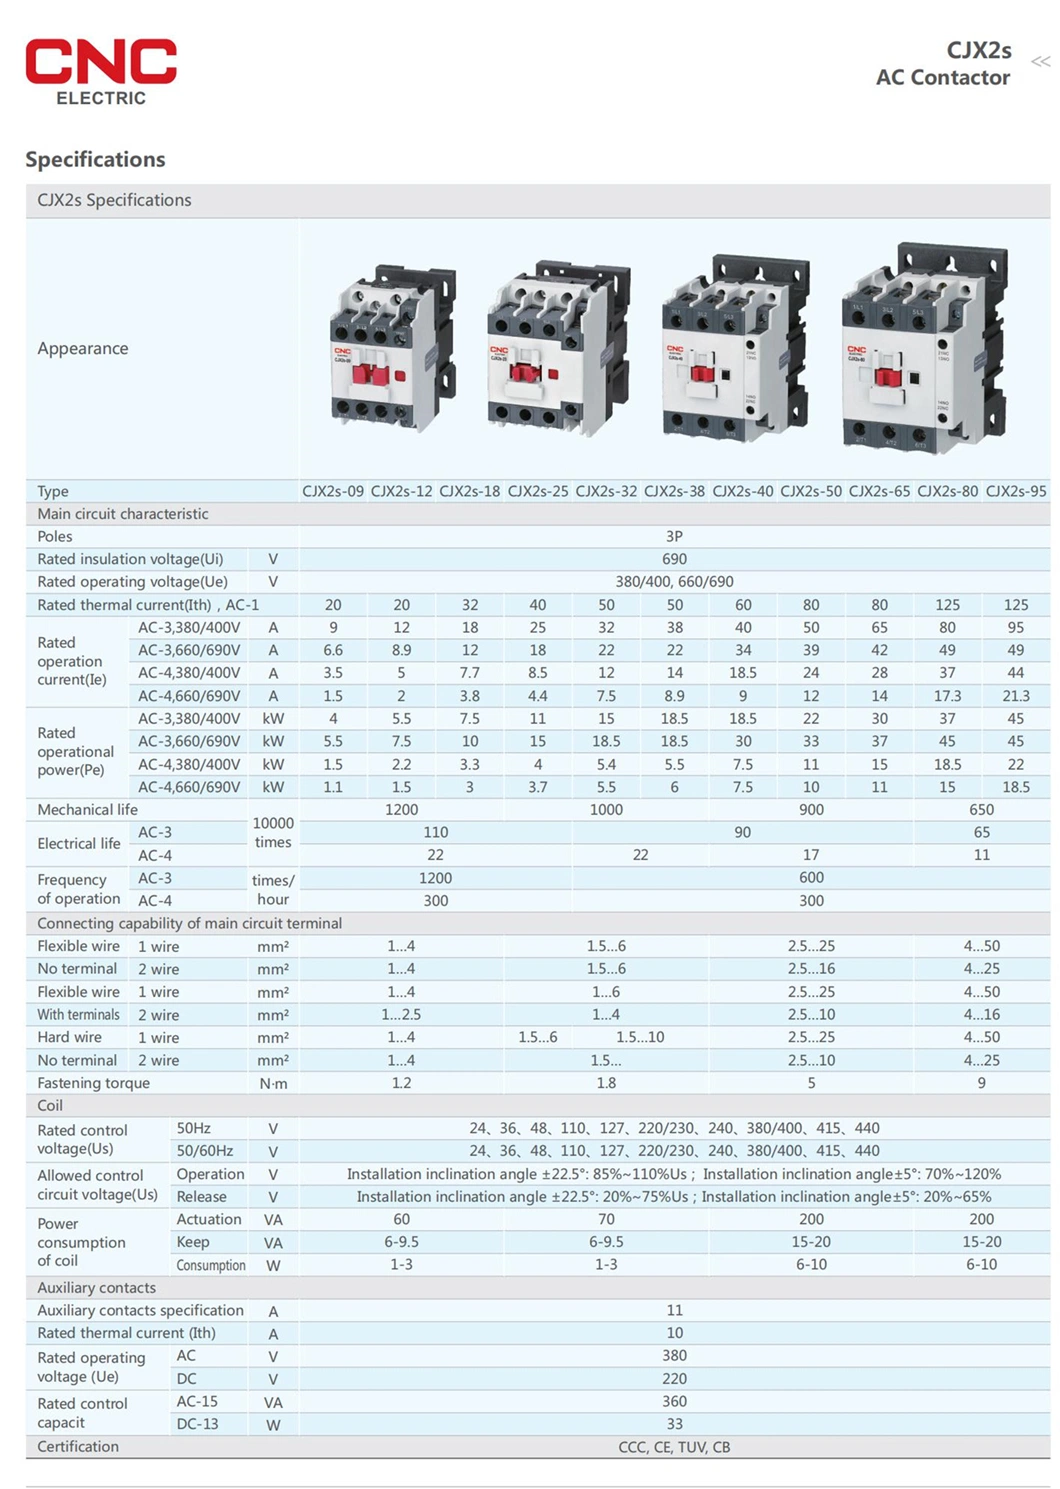 CNC Low Price 18A AC Contactor 18A 440V AC Contactor 18A 380V AC Contactor